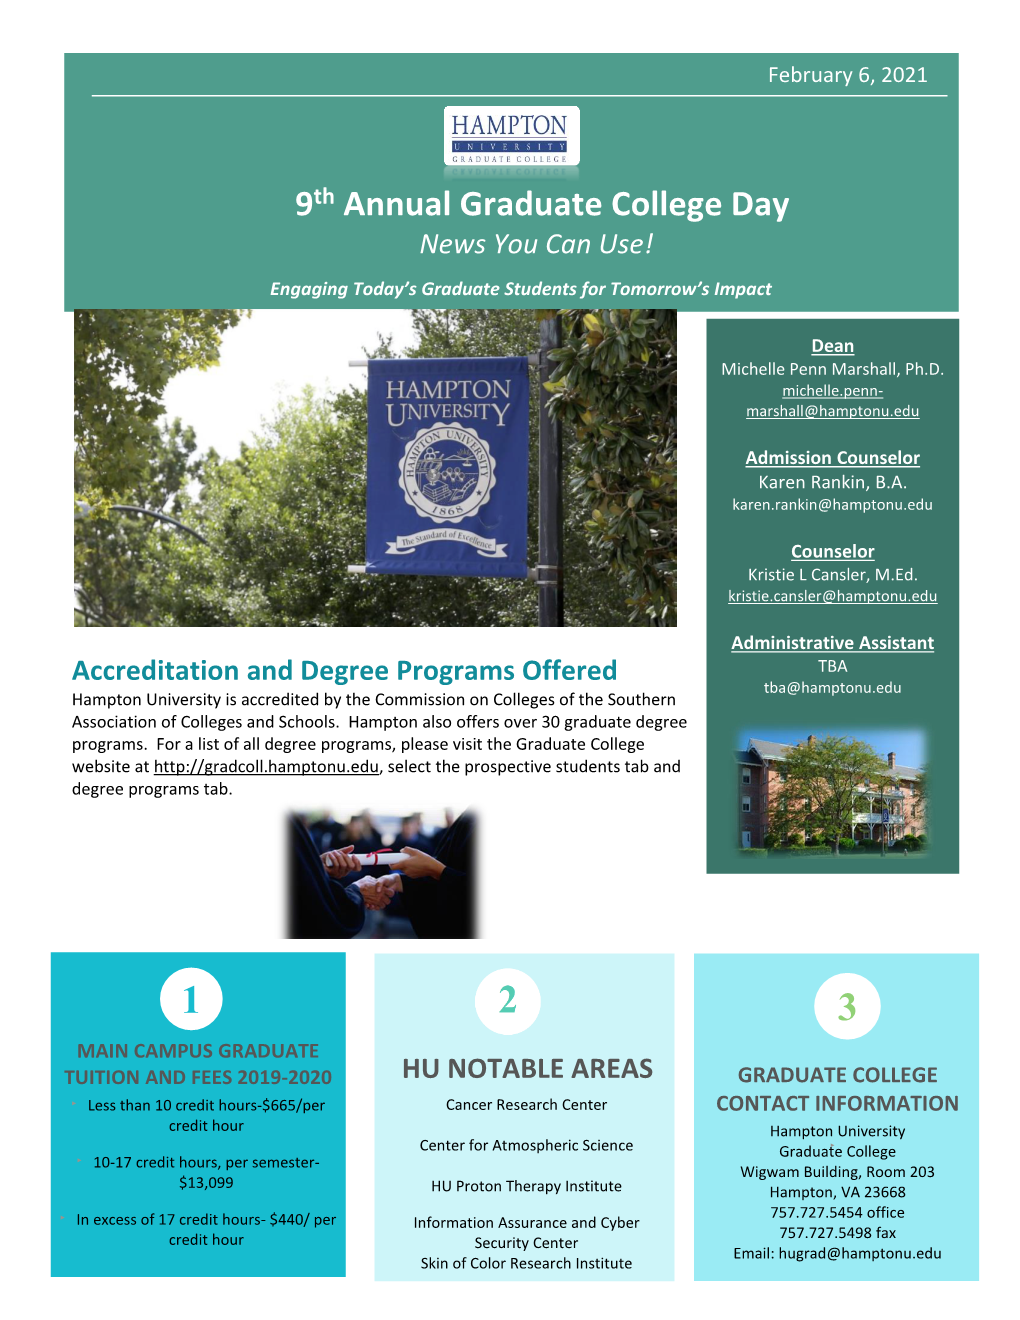 9Th Annual Graduate College Day